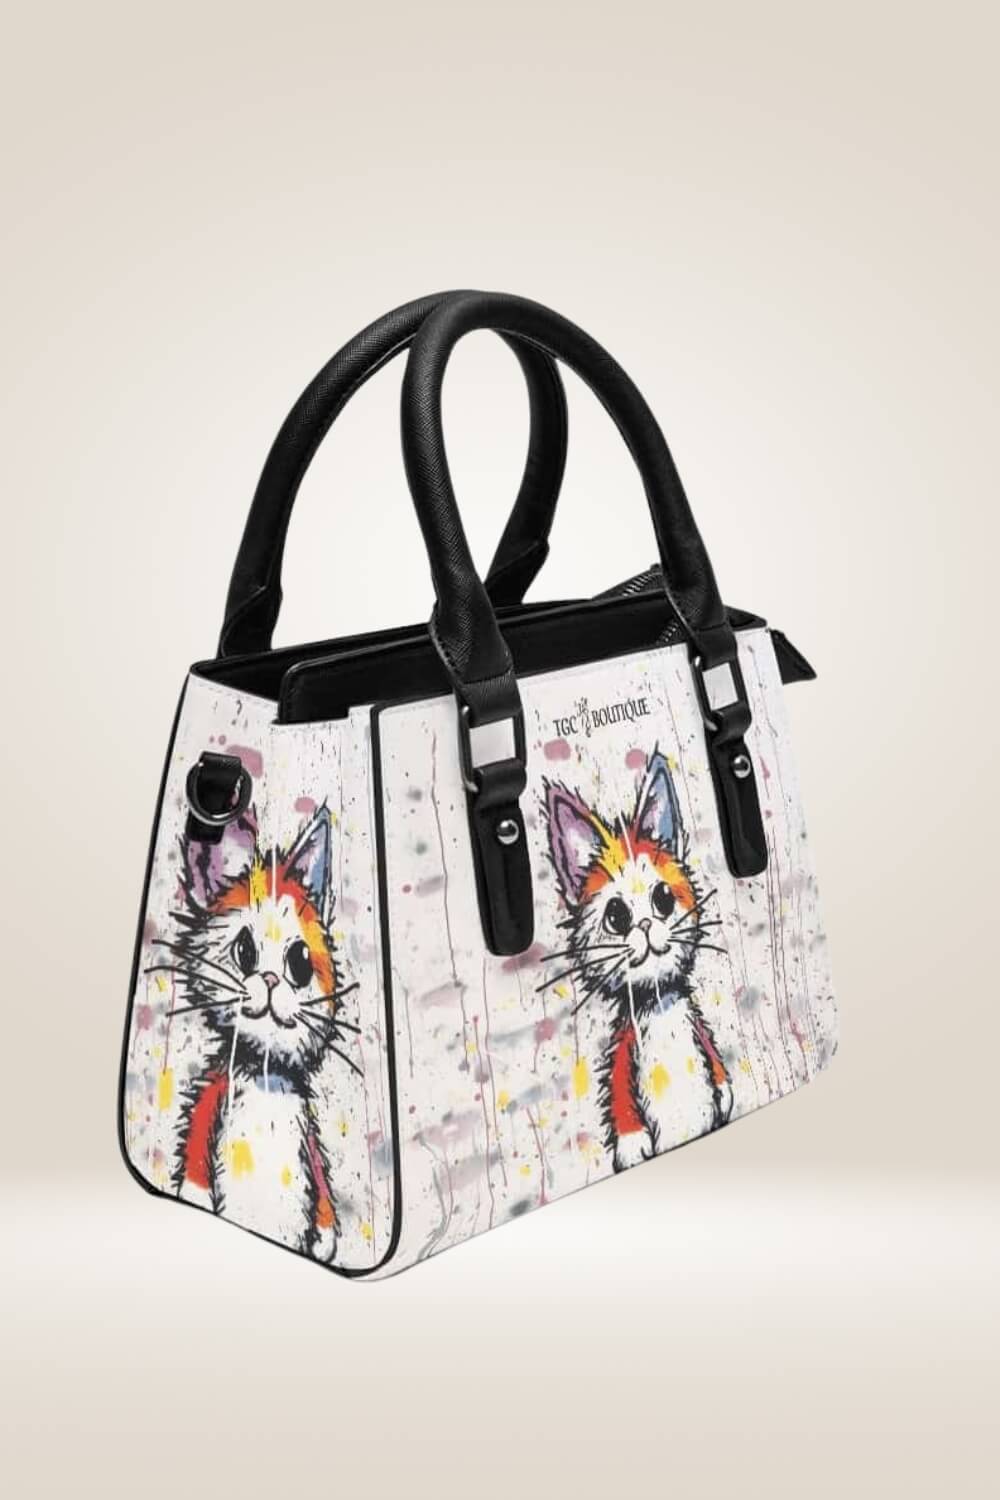 Cartoon Orange Cat Shoulder Bag - TGC Boutique - Satchel Handbag